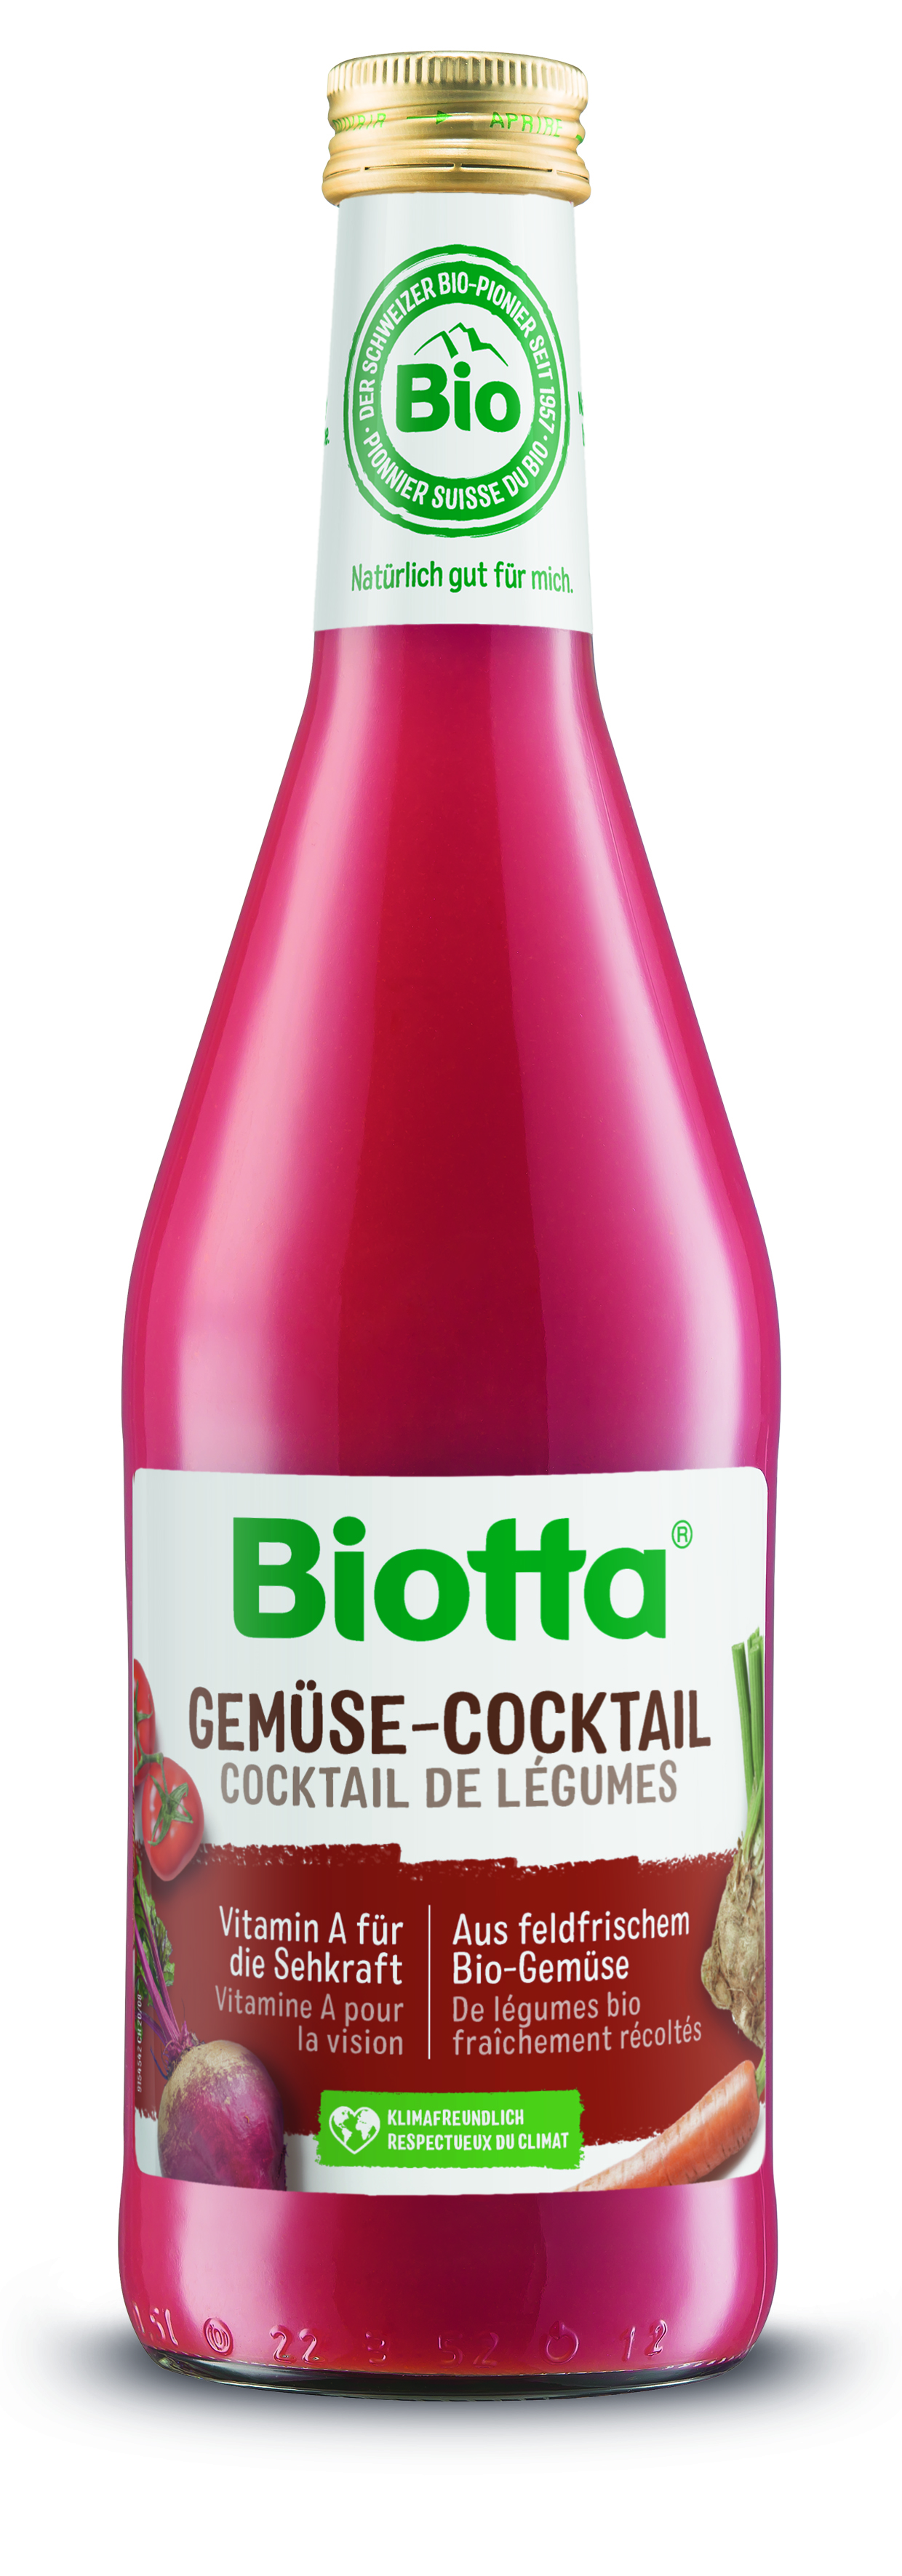 Biotta zeleninový kokteil 4 kartóny - cena za 1 ks 3,625€ s DPH